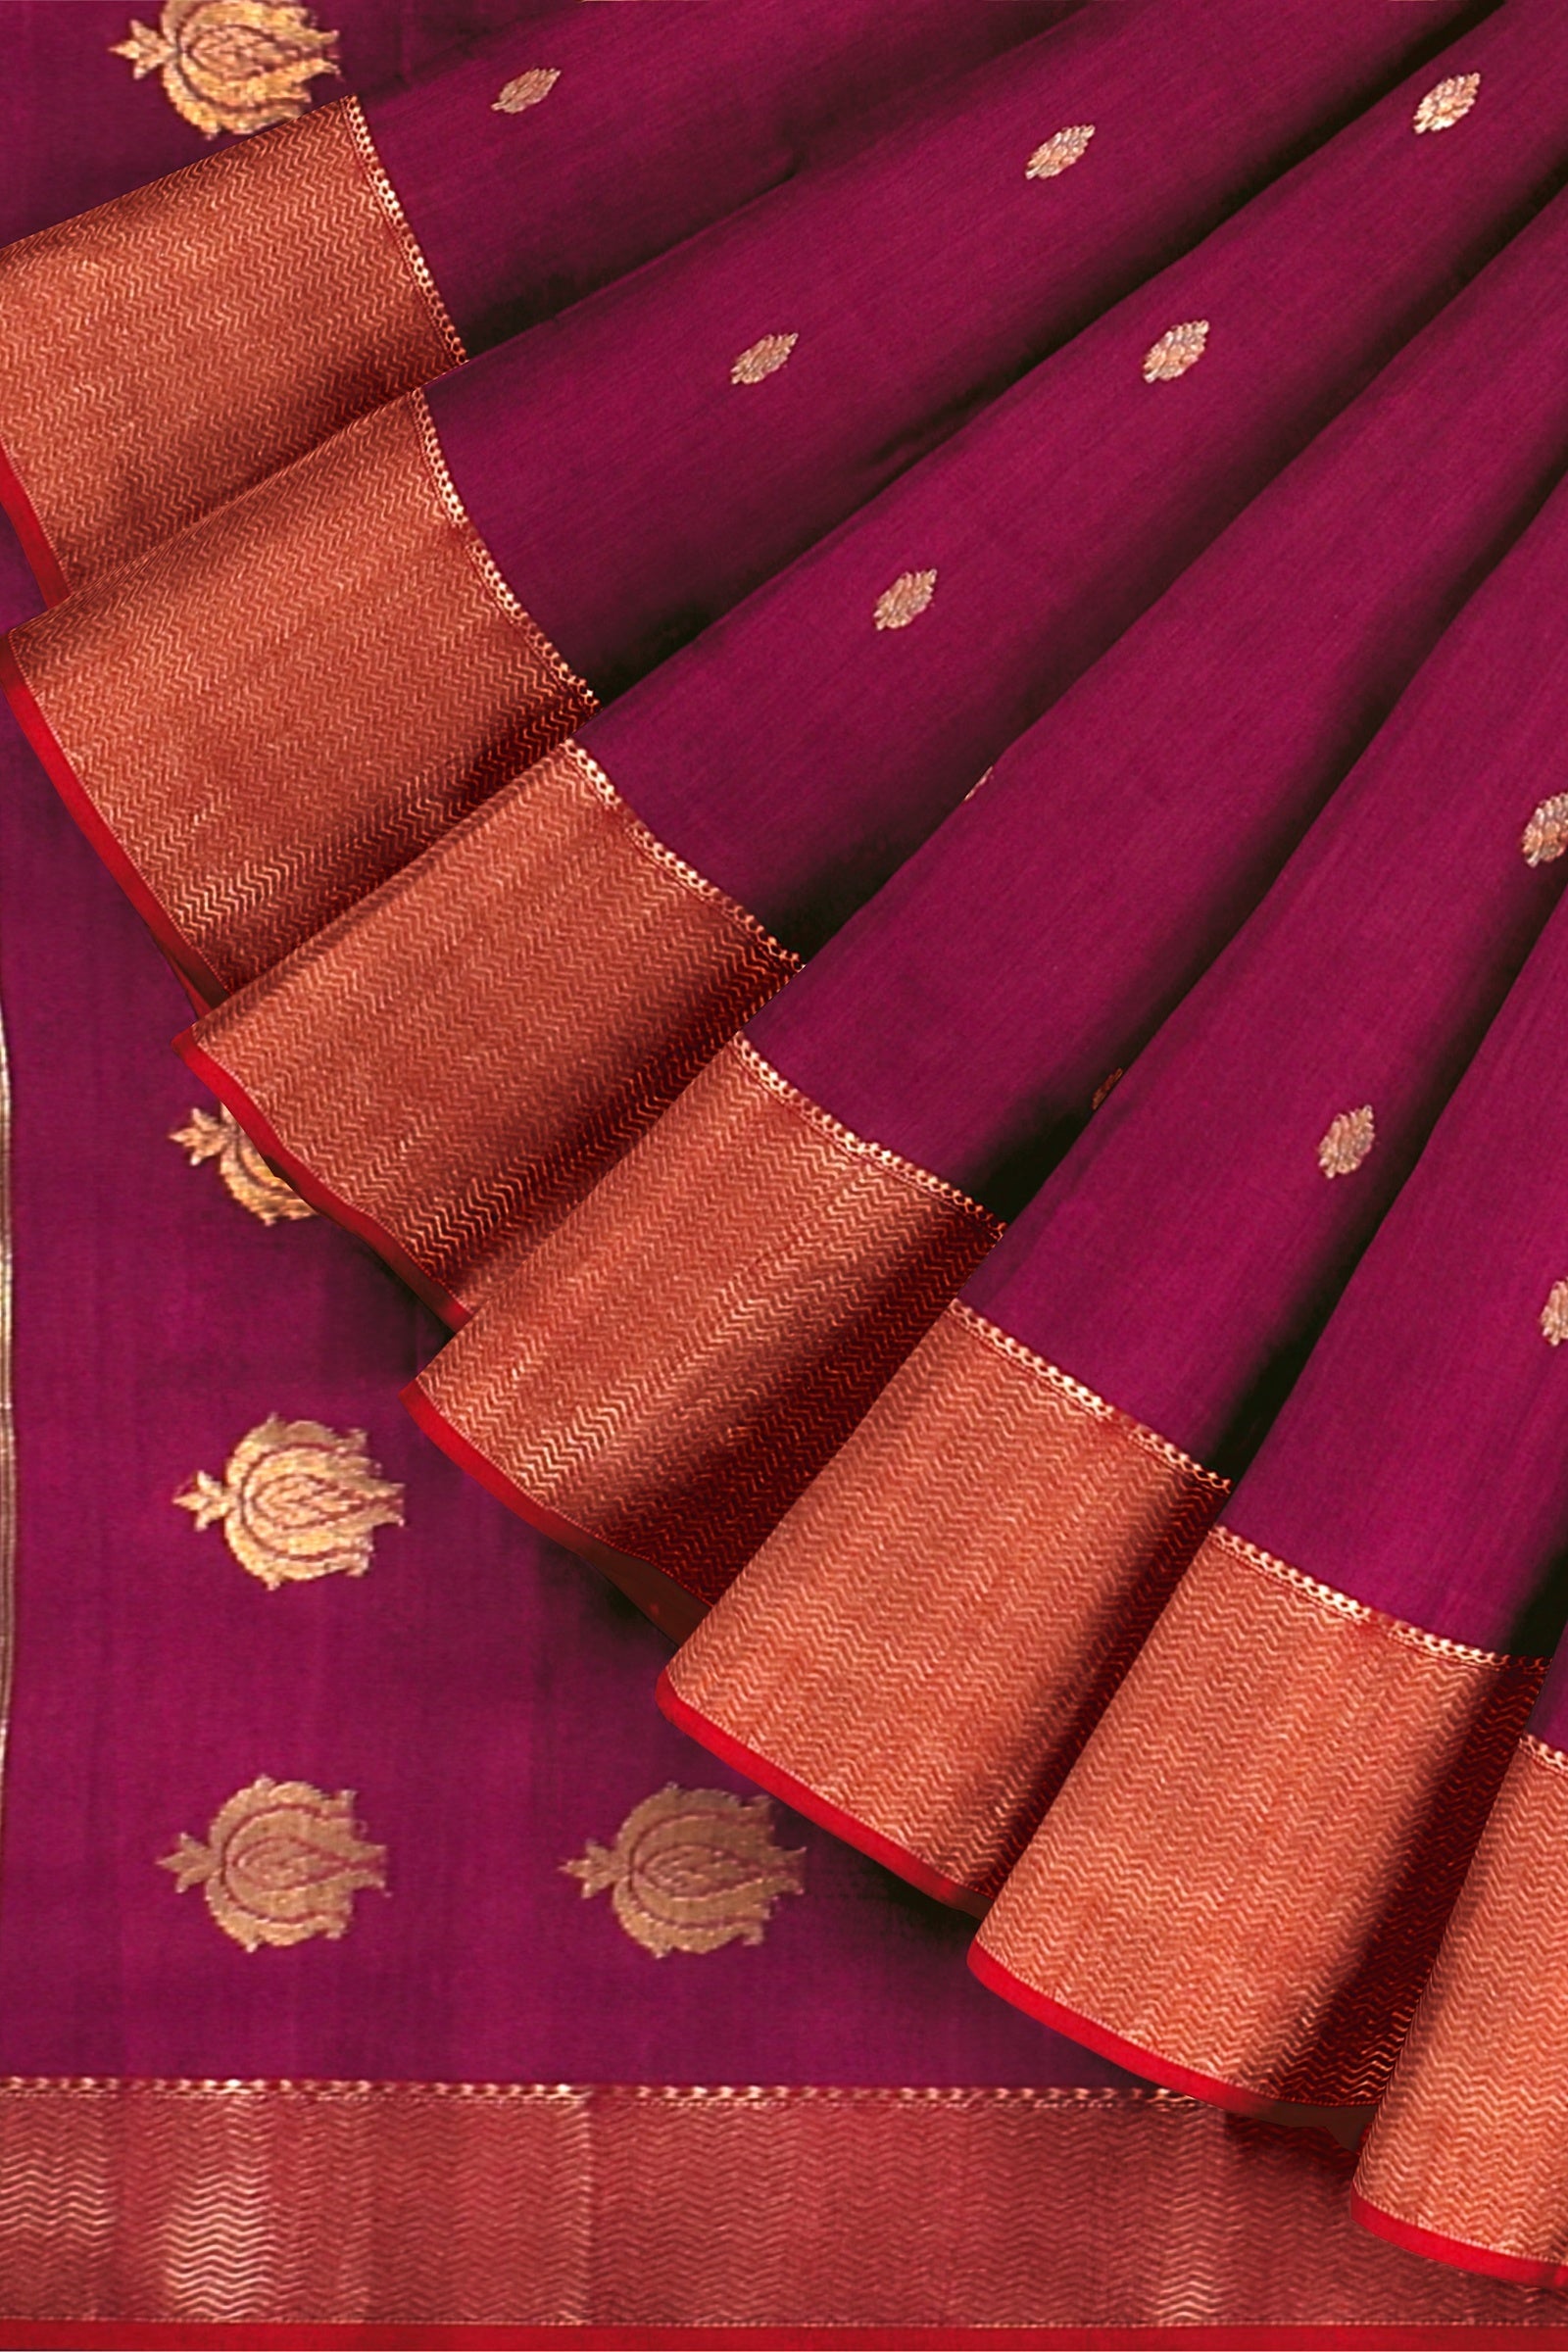 Handwoven Rani Pink Color Traditional Buti Sausar Silk Saree  with Zari Border and Buta Palla SKU-BS10114 - Bhartiya Shilp